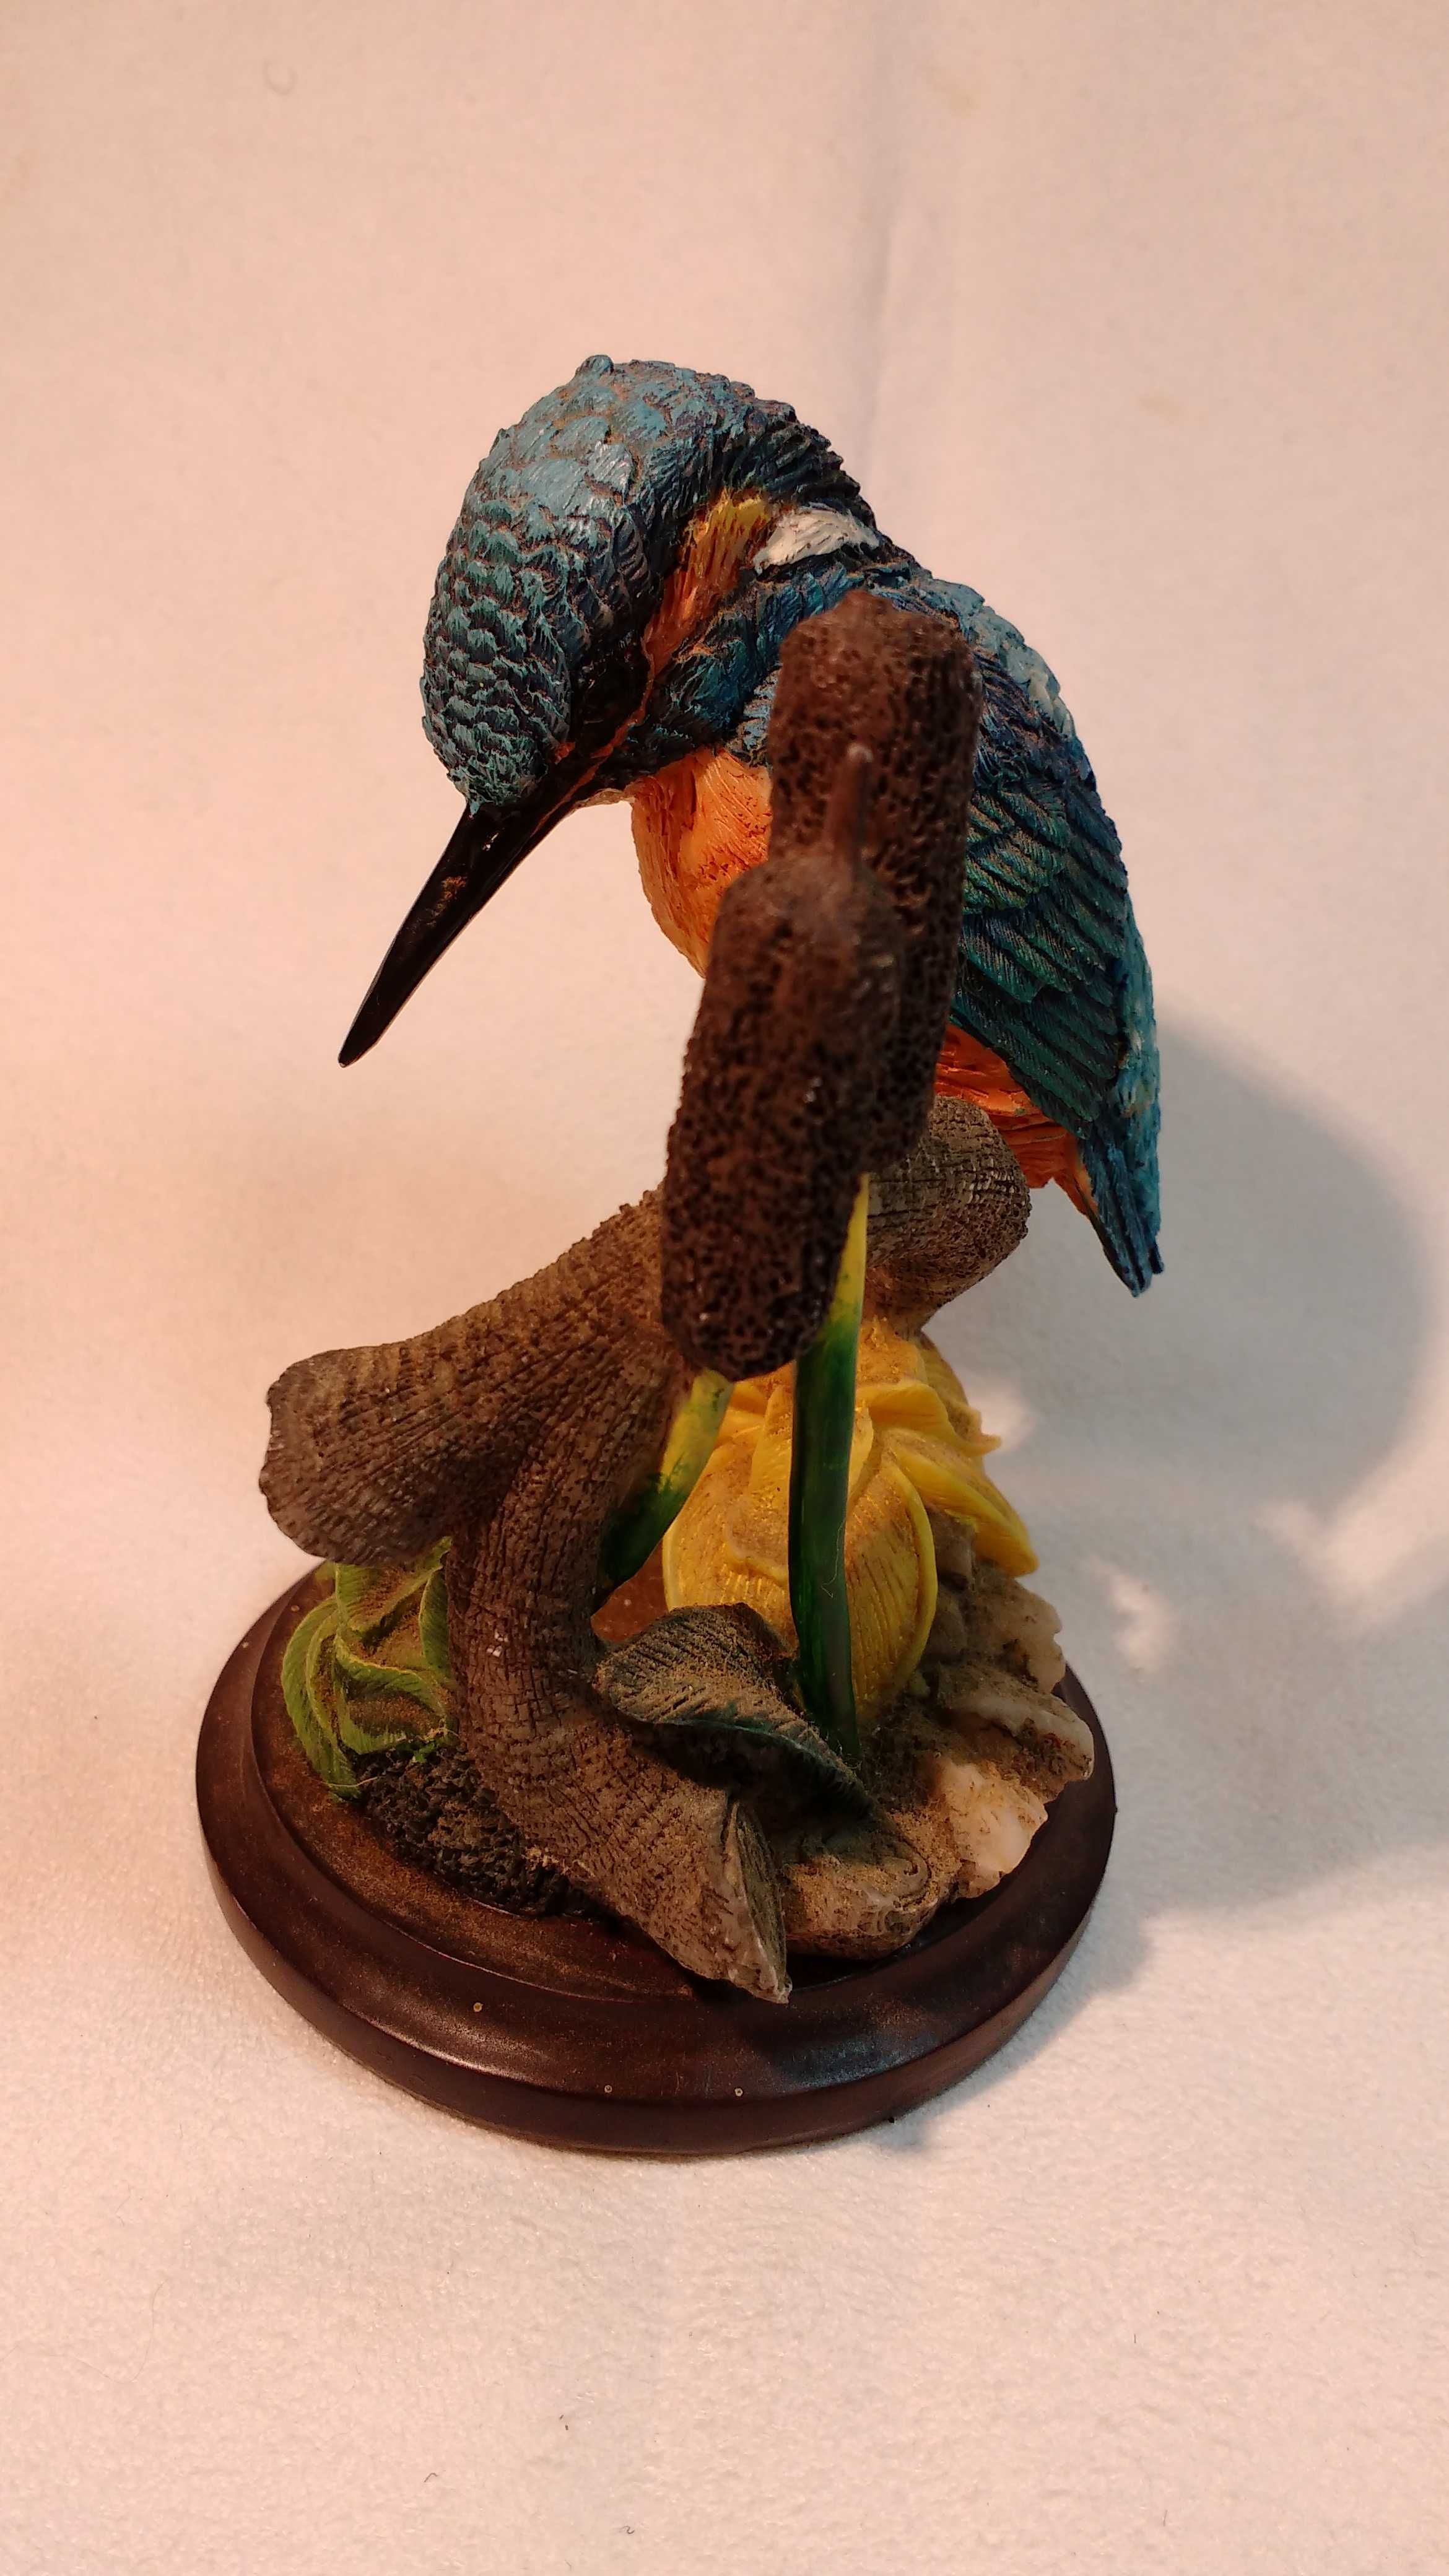 Piękny kolekcjonerski ptak
Figurka